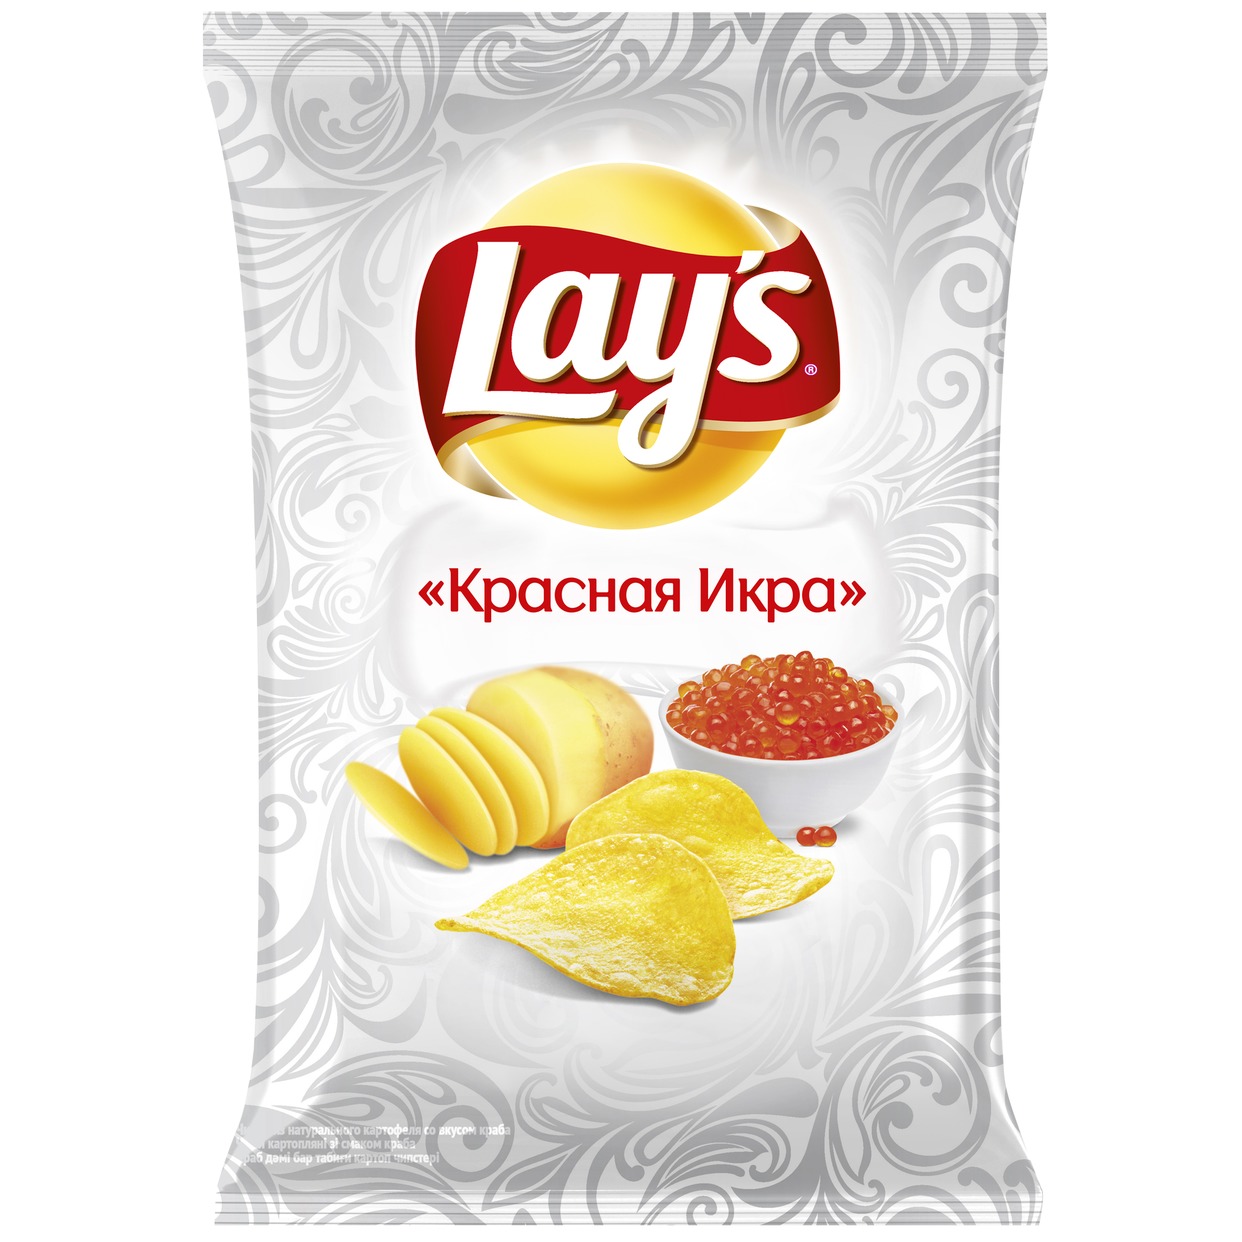 Чипсы из натурального картофеля Lay's со вкусом "Красная икра", 140г по акции в Пятерочке